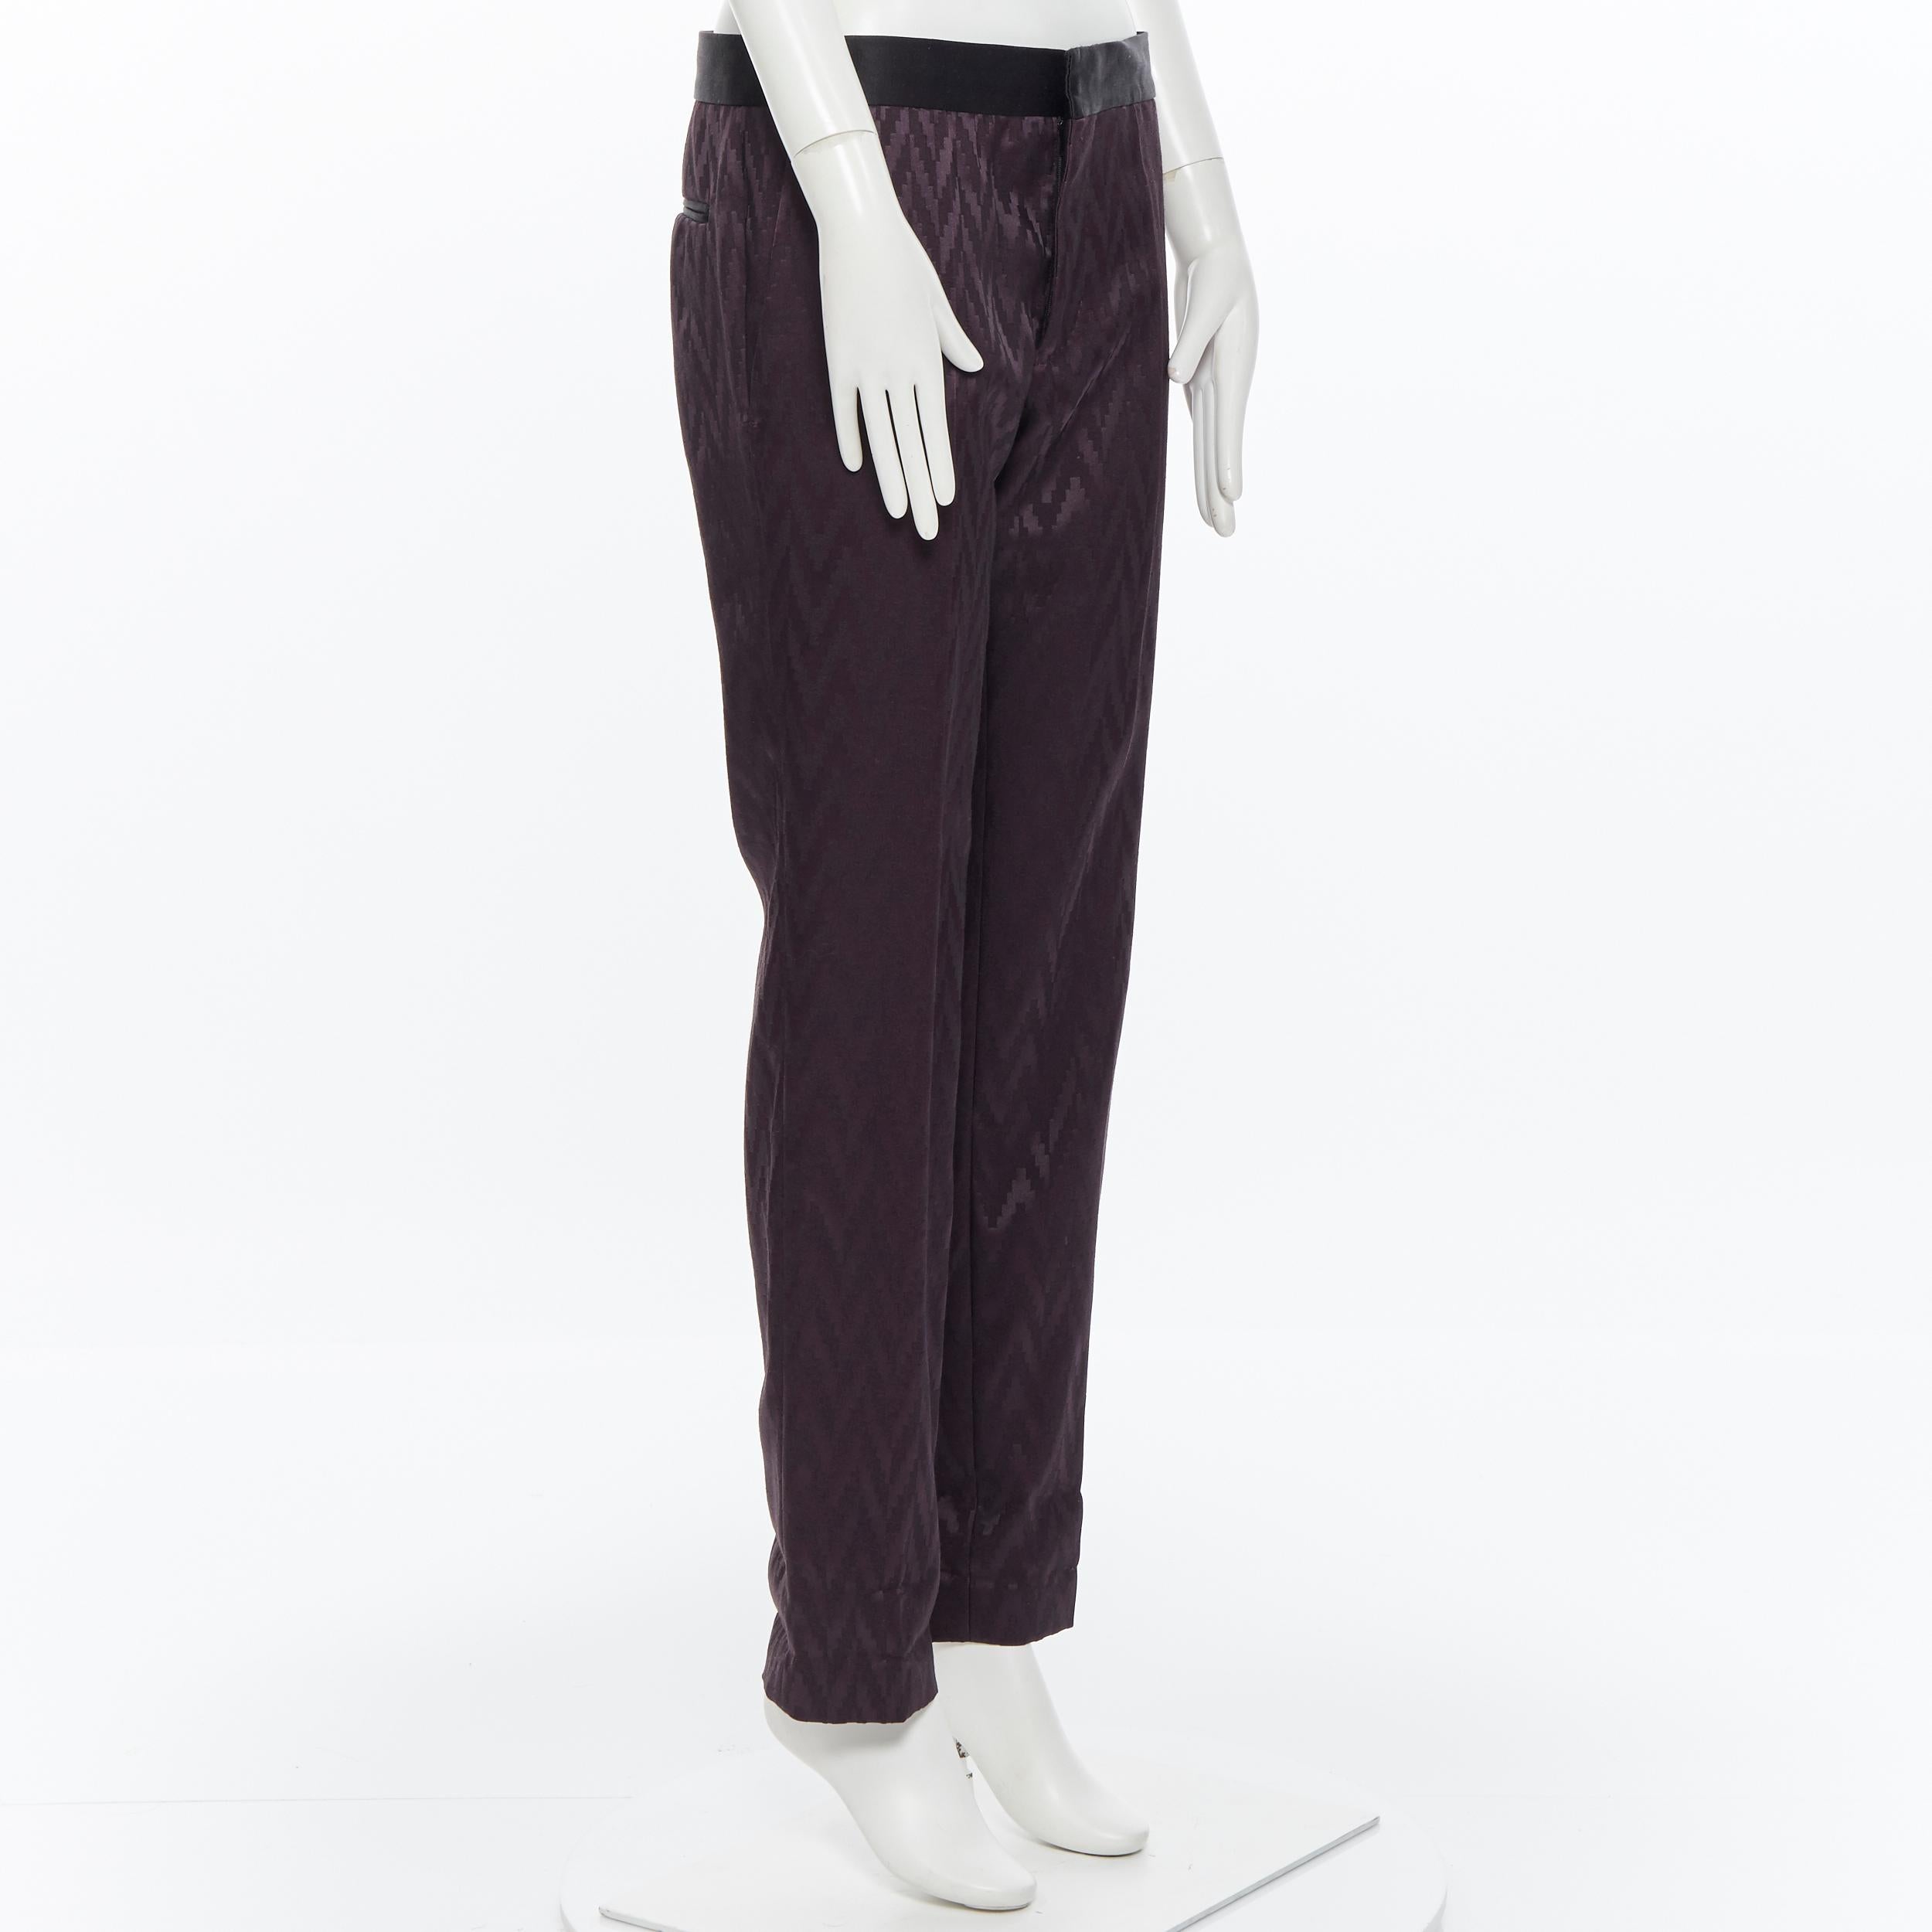 HAIDER ACKERMANN purple chevon jacquard wool silk silk band trousers pants S
Brand: Haider Ackermann
Designer: Haider Ackermann
Model Name / Style: Jacquard pants
Material: Wool, silk
Color: Purple
Pattern: Geometric
Closure: Zip
Extra Detail: Silk